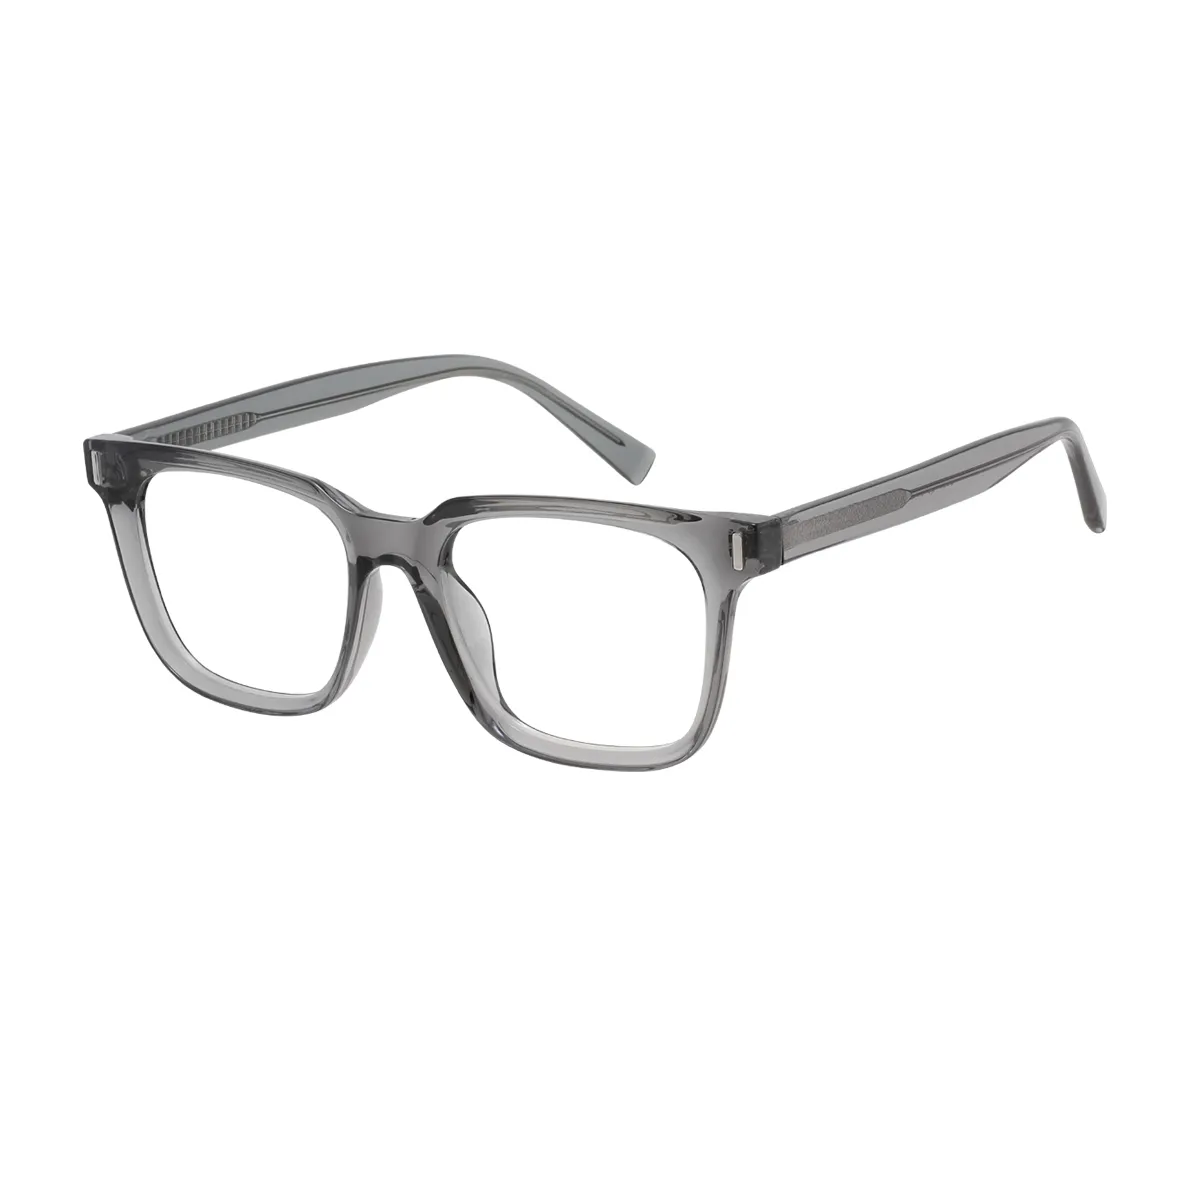 Albertine - Square Gray Glasses for Men & Women